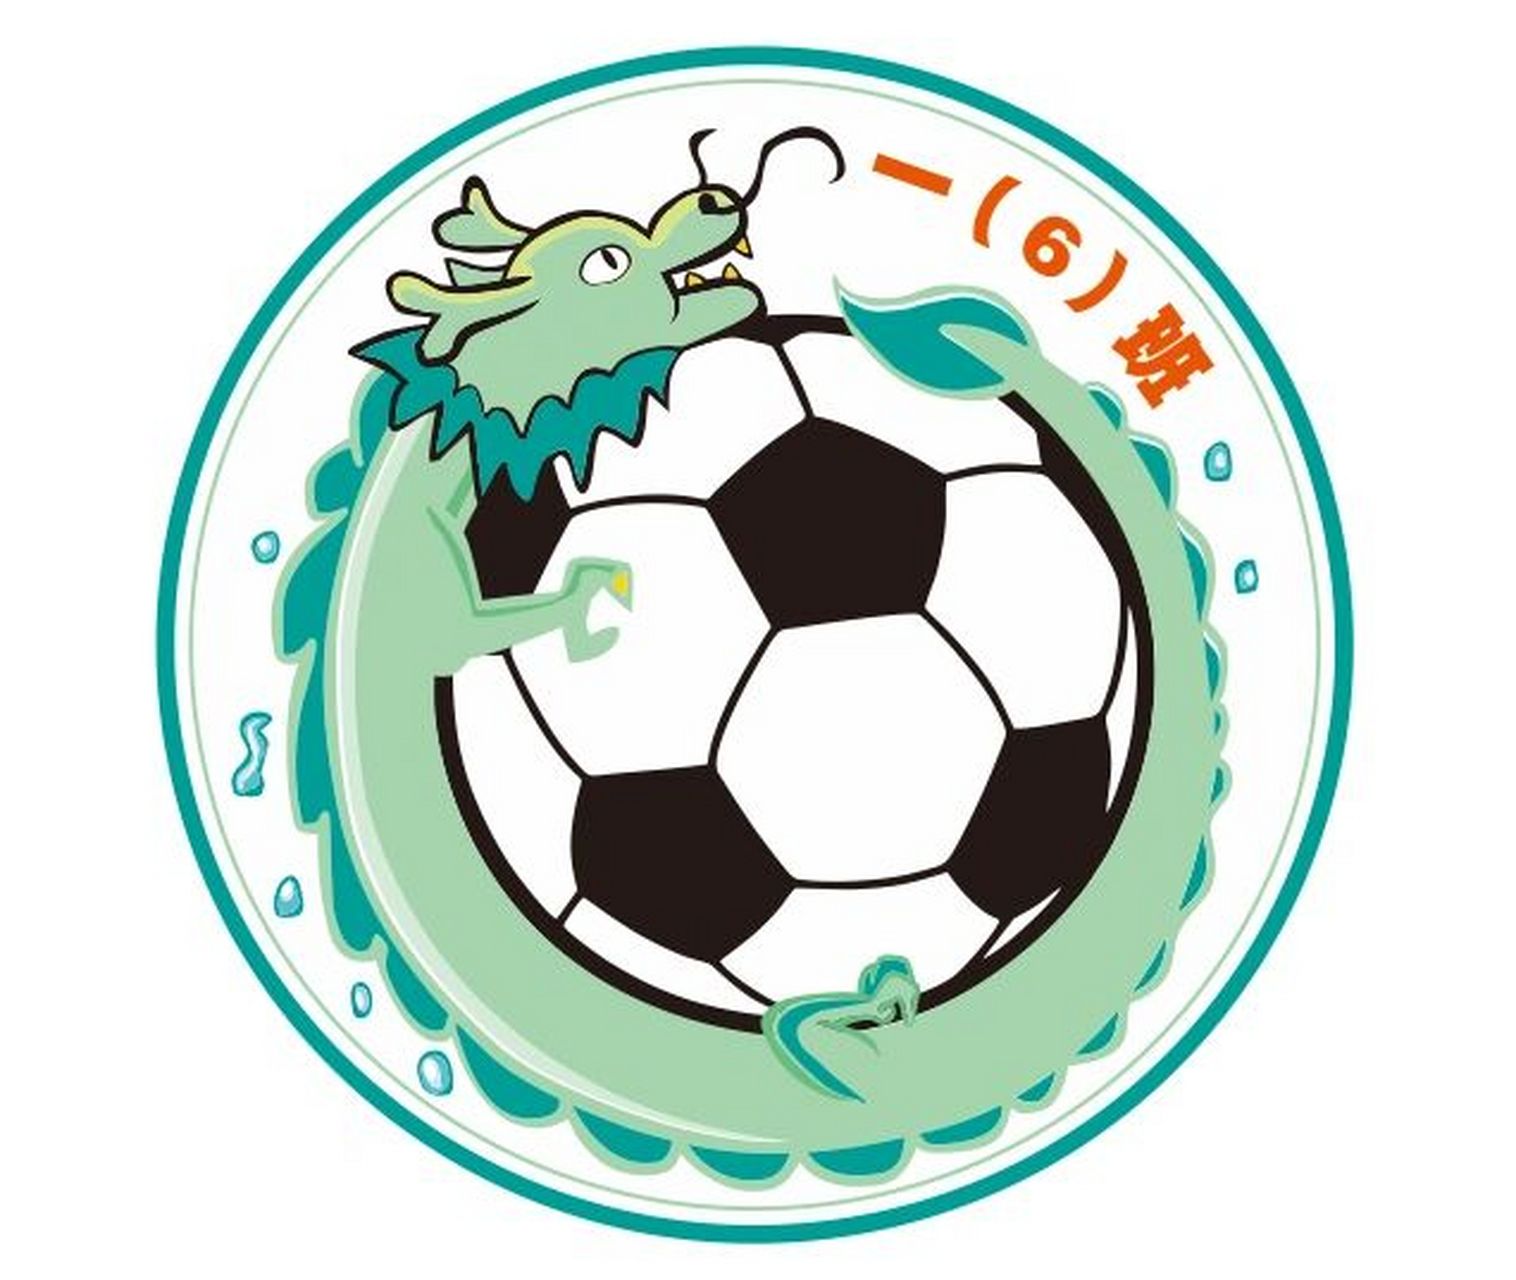 希腊足球队徽图片